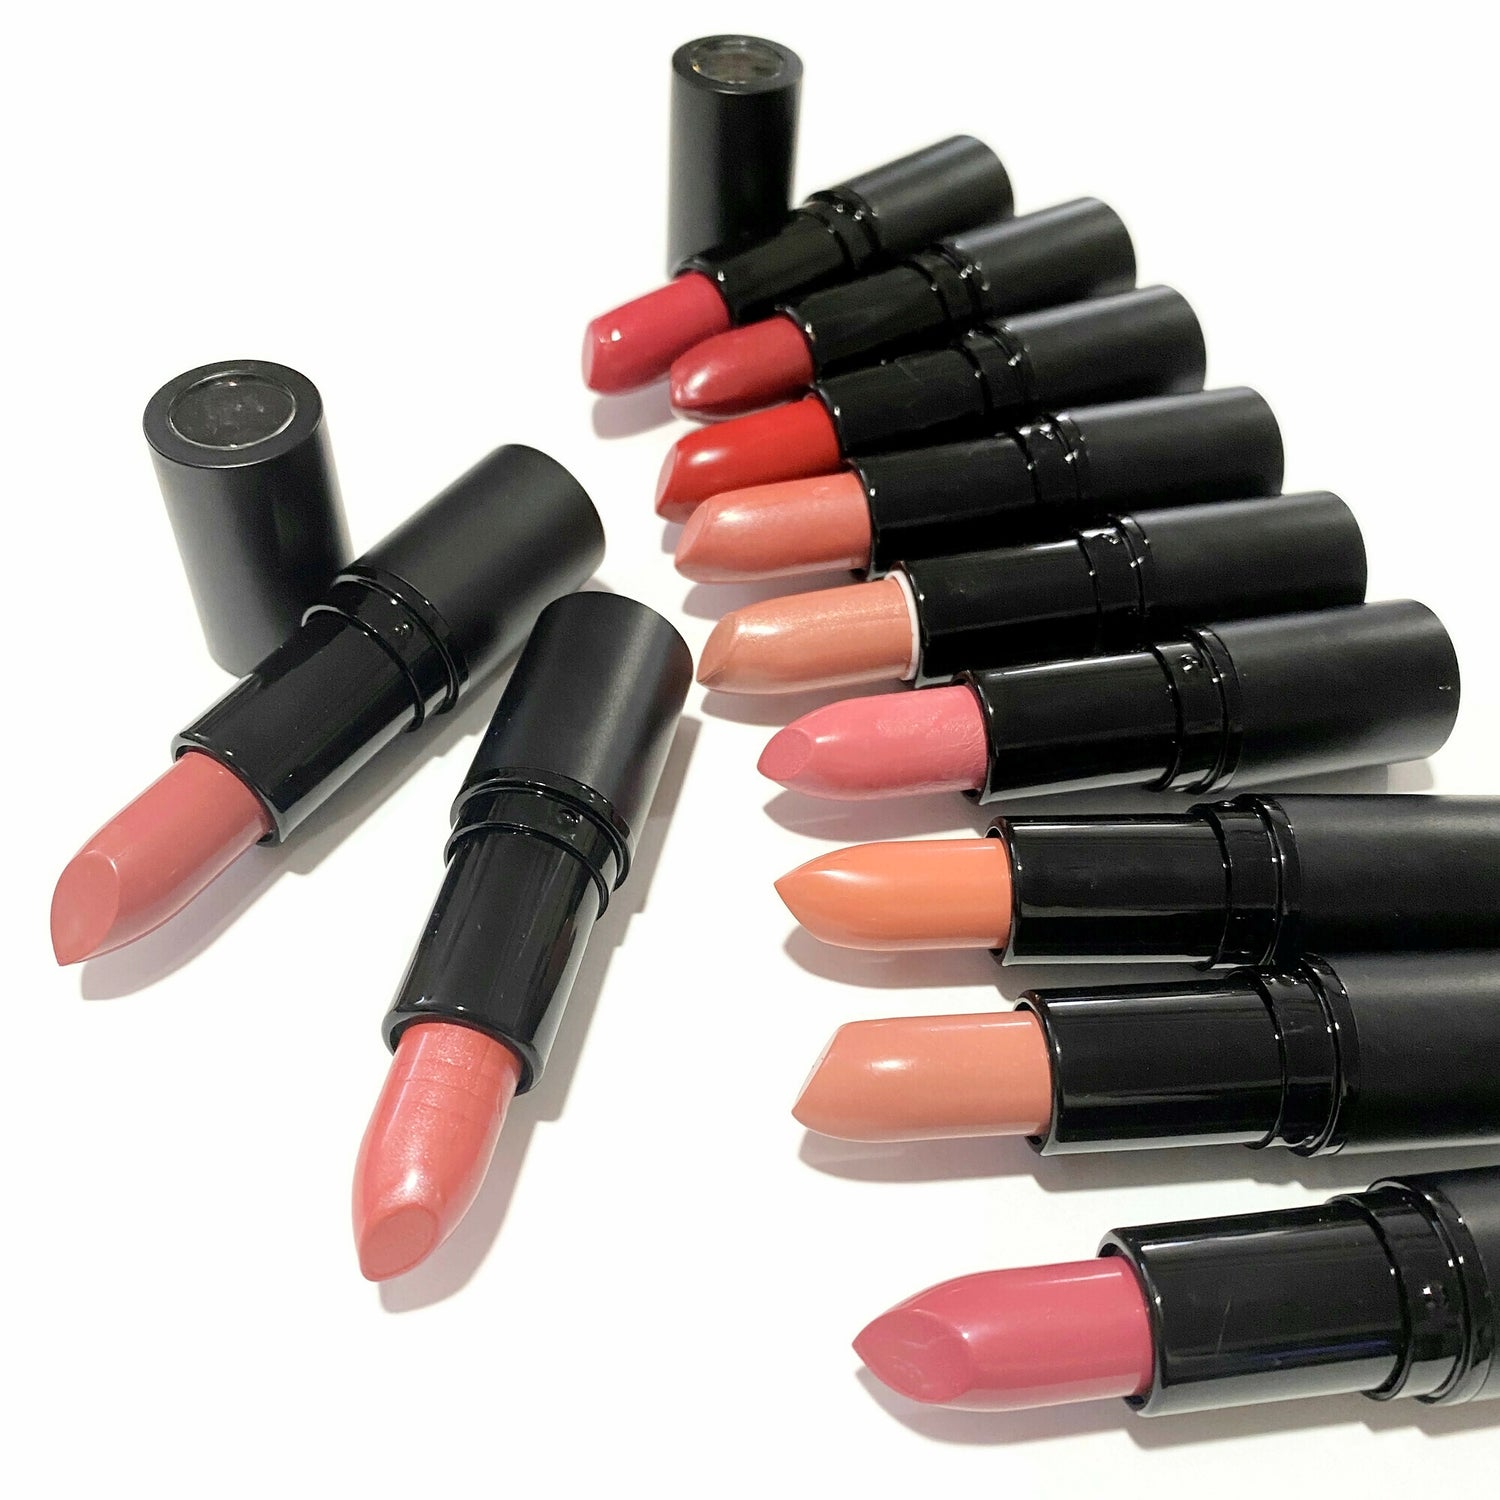 Shea Butter Lipsticks